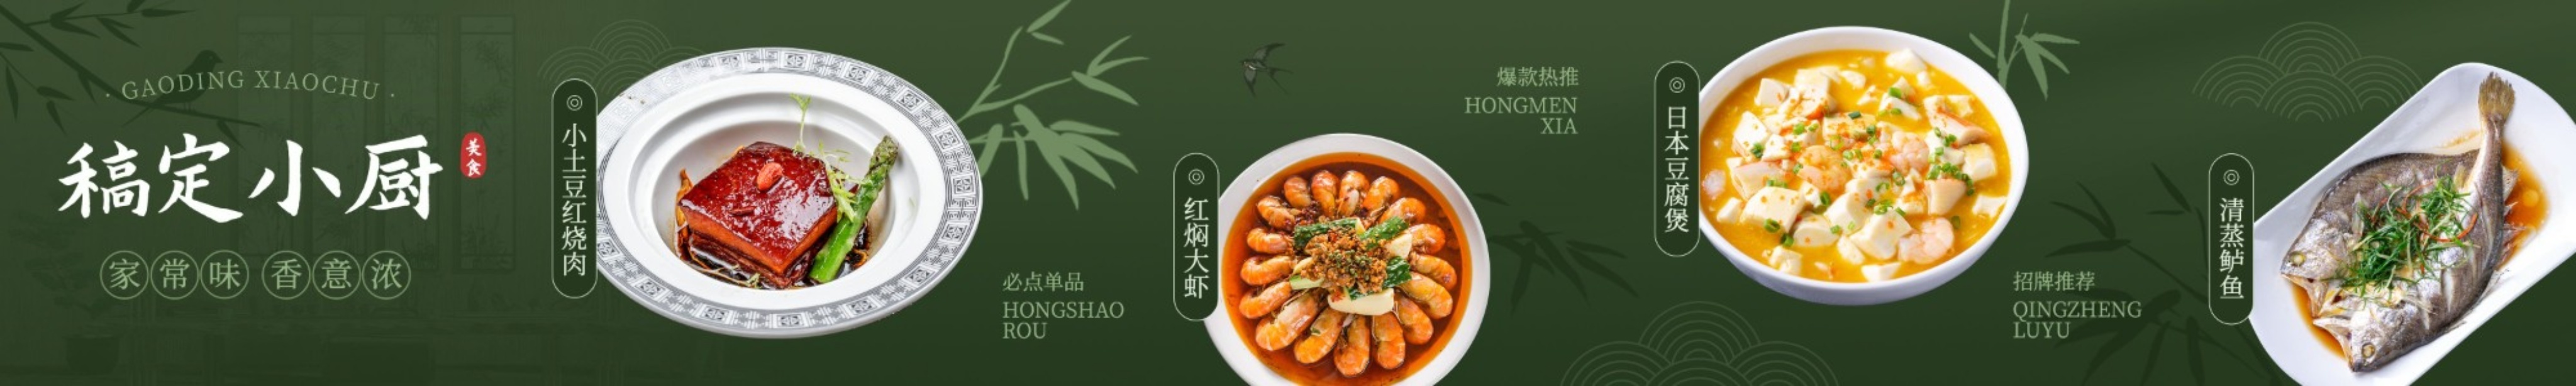 中国风竹林餐饮美食中餐抖音团购大众点评五连图预览效果